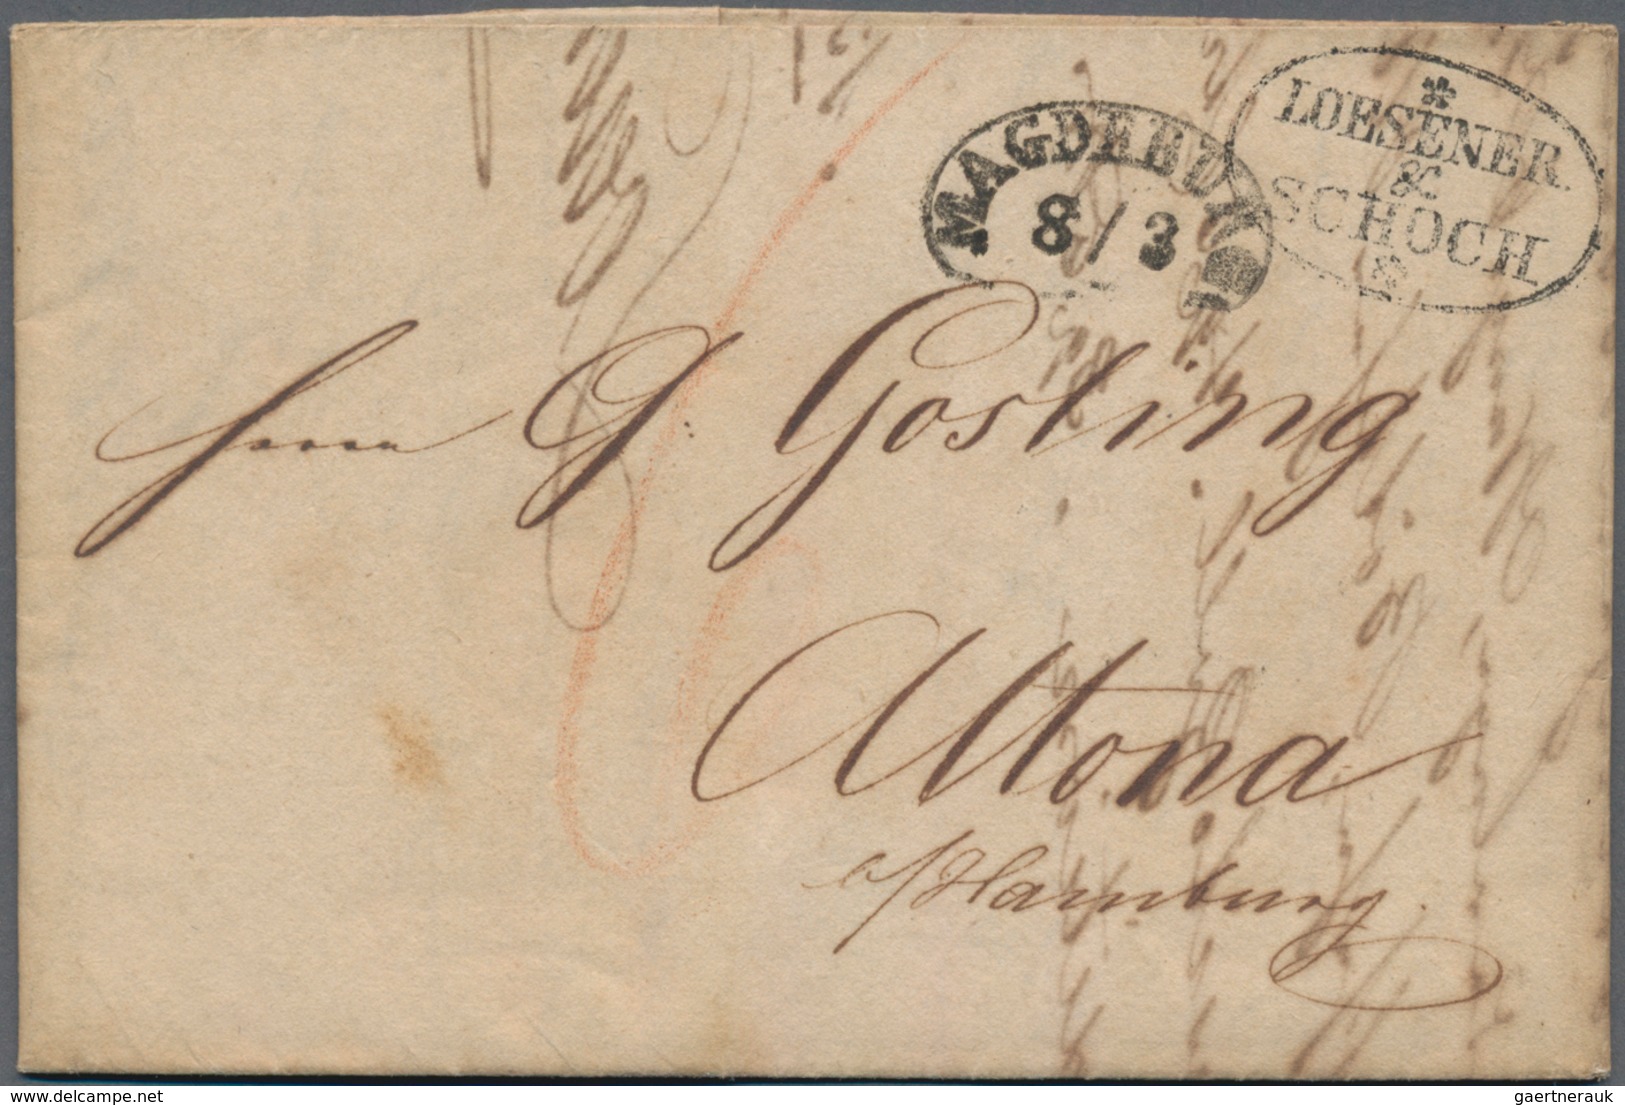 Preußen - Vorphilatelie: 1810/1870 (ca.), MAGDEBURG, Partie von ca. 58 meist markenlosen Belegen bzw